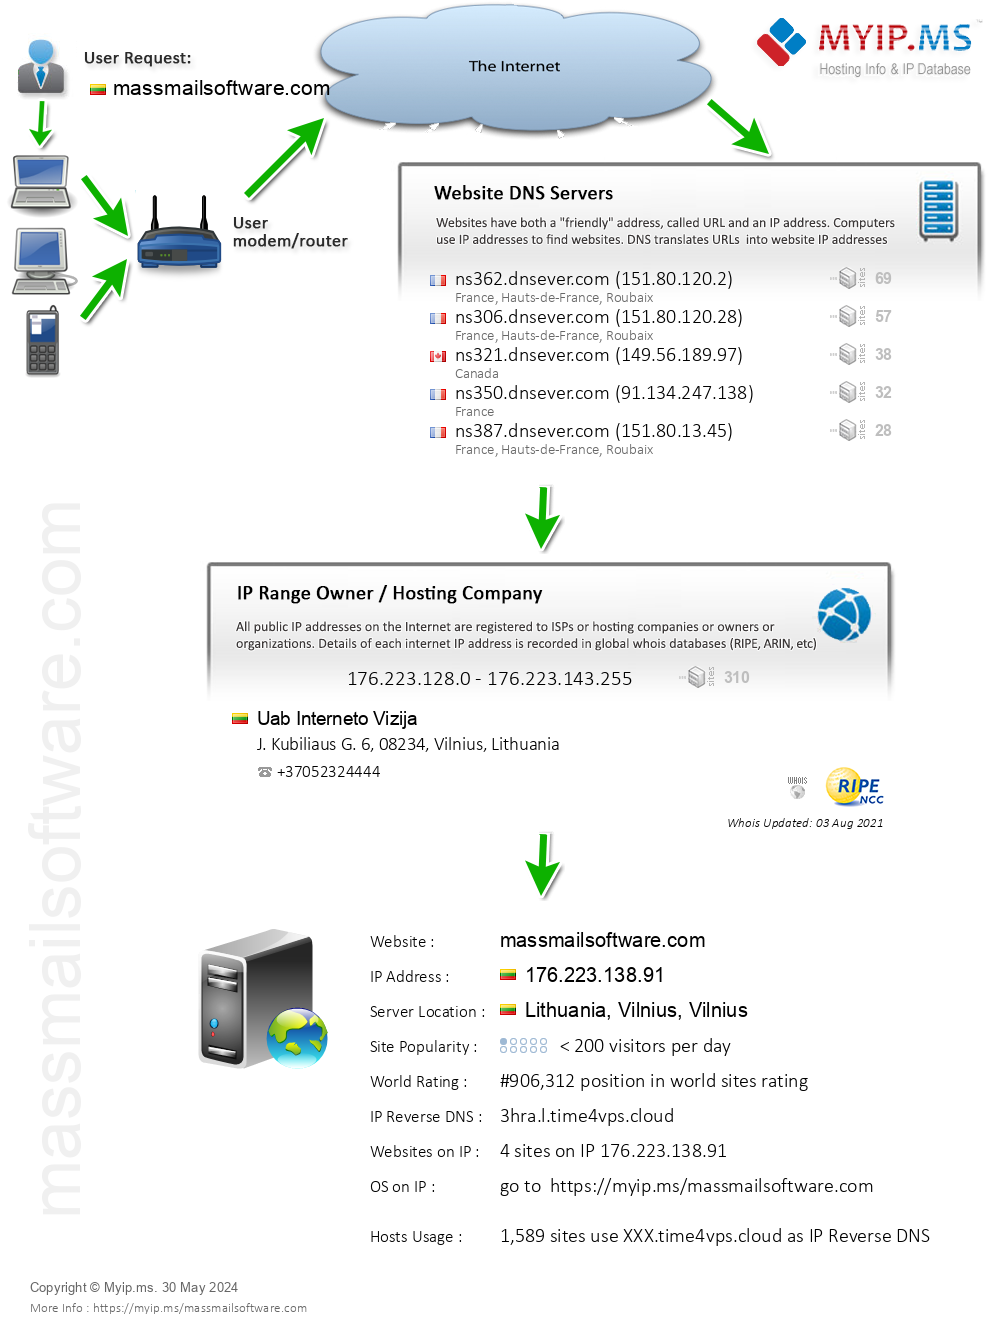 Massmailsoftware.com - Website Hosting Visual IP Diagram